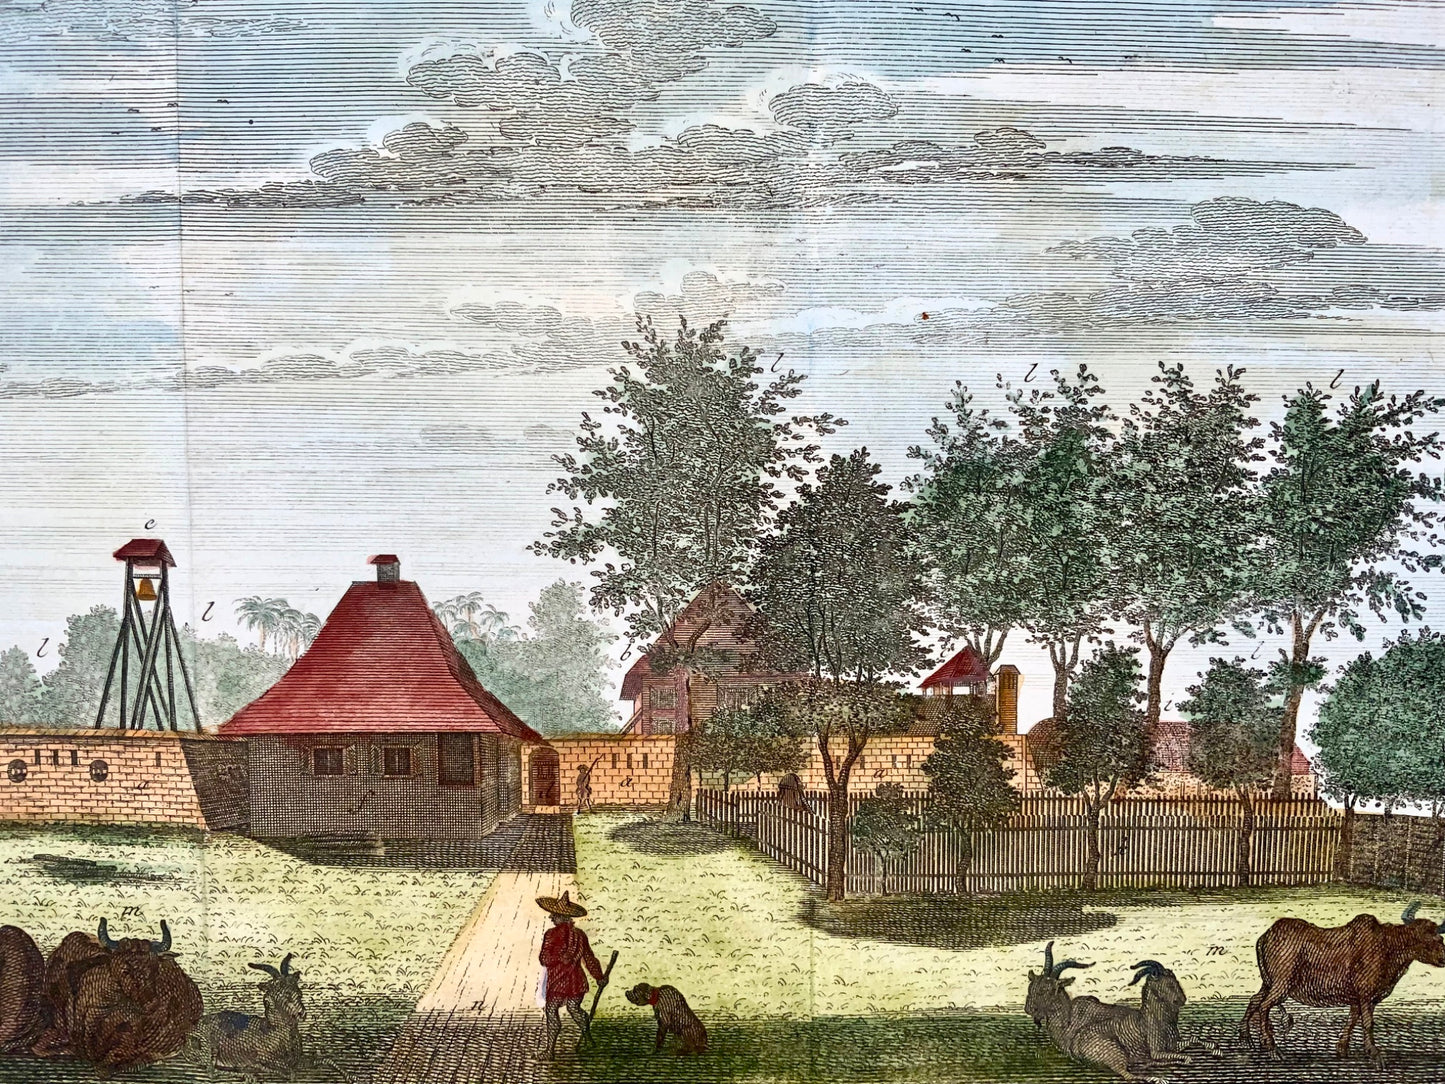 1763 J. Schley, veduta di Fort Tangerang, Indonesia, foglio colorato a mano, topografia straniera